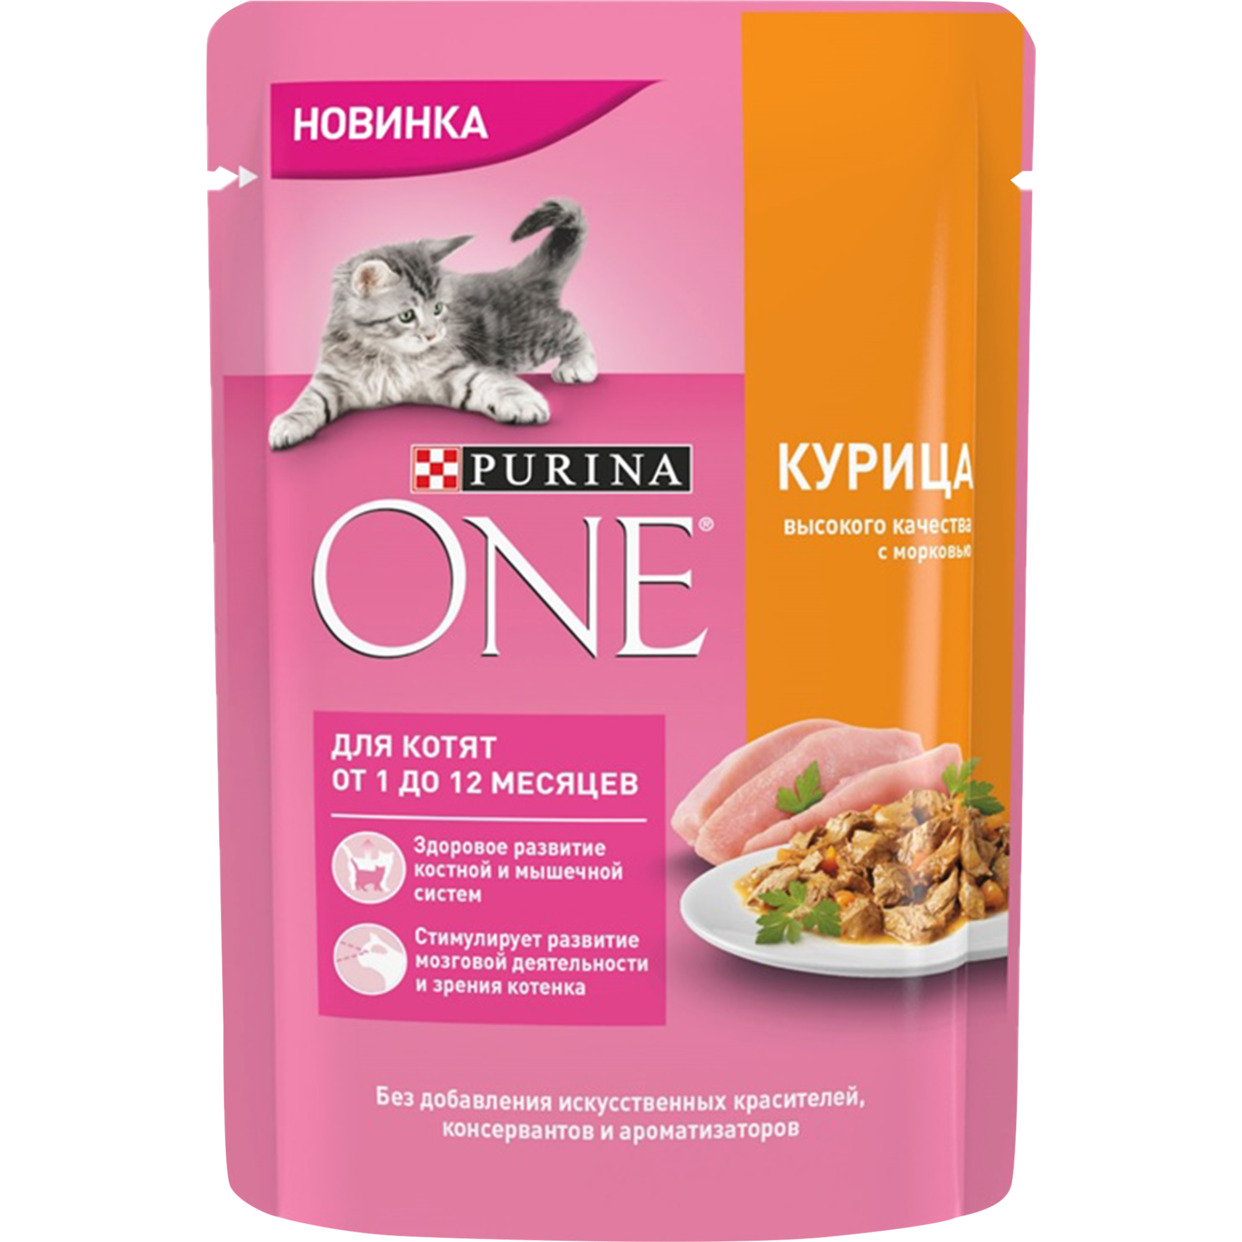 PURINA ONE® (ПУРИНА УАН) корм для котят от 1 до 12 месяцев, с курицей высокого качества и морковью, 75 гр по акции в Пятерочке